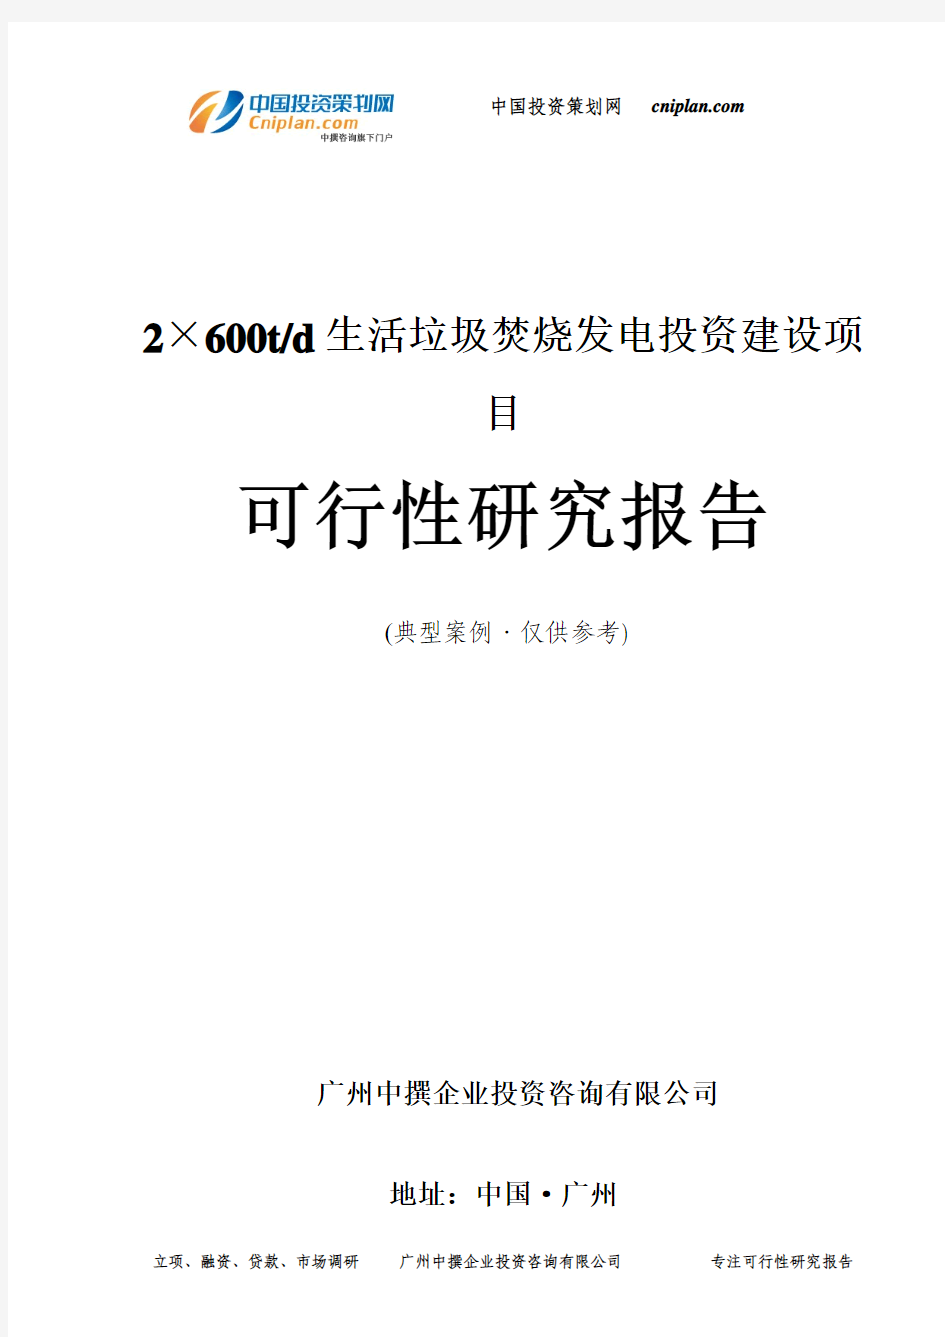 2×600t d生活垃圾焚烧发电投资建设项目可行性研究报告-广州中撰咨询